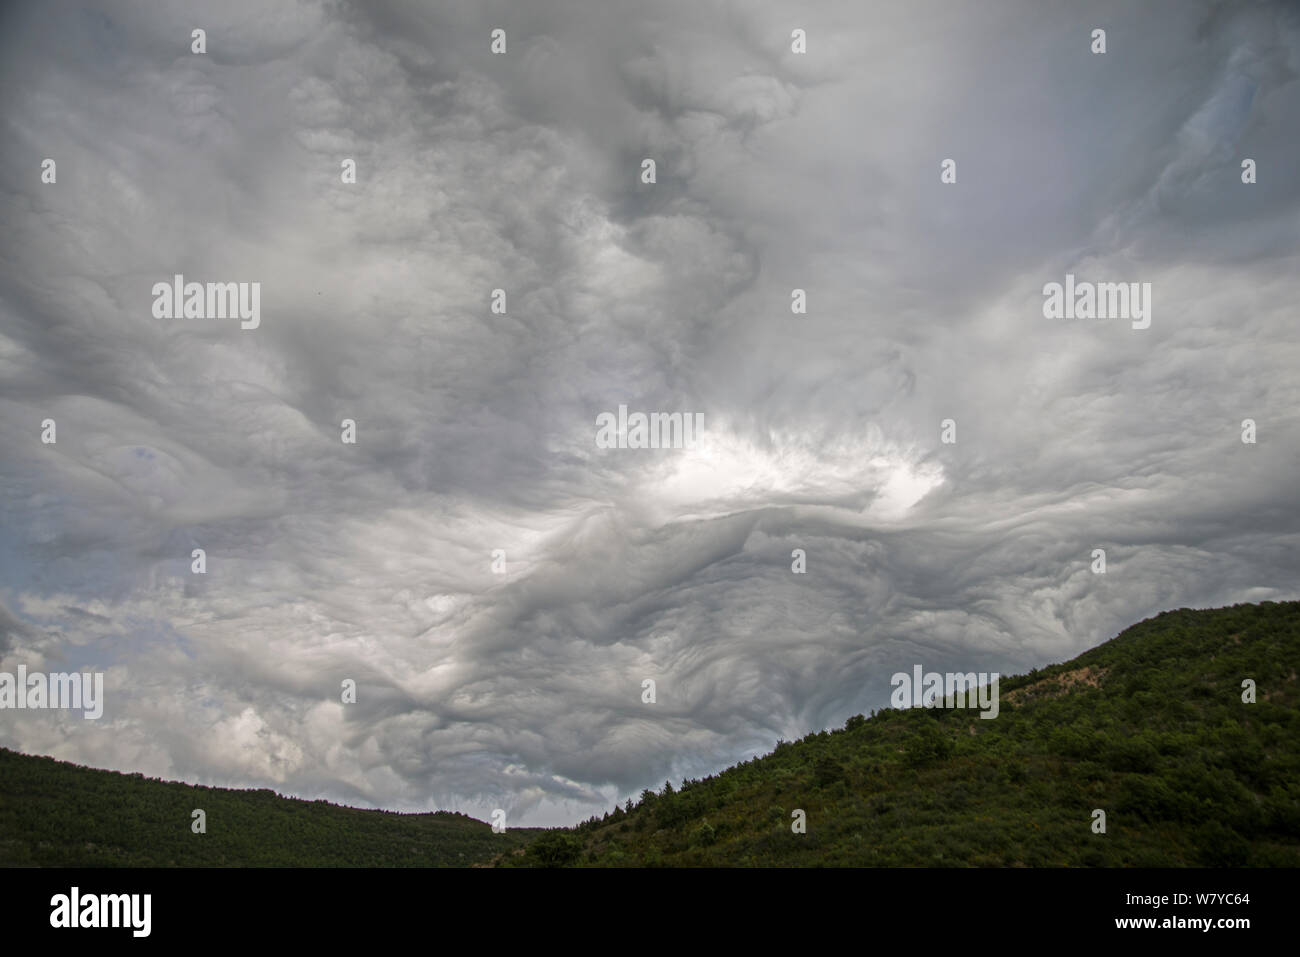 Undulatus asperatus Wolken, Provence, Frankreich, Mai 2014. Diese wolkenbildung wurde zuerst als eine neue Art von Cloud im Jahr 2009 vorgeschlagen, und wenn formell anerkannt wird die erste Wolkenbildung werden in 60 Jahren benannt. Stockfoto